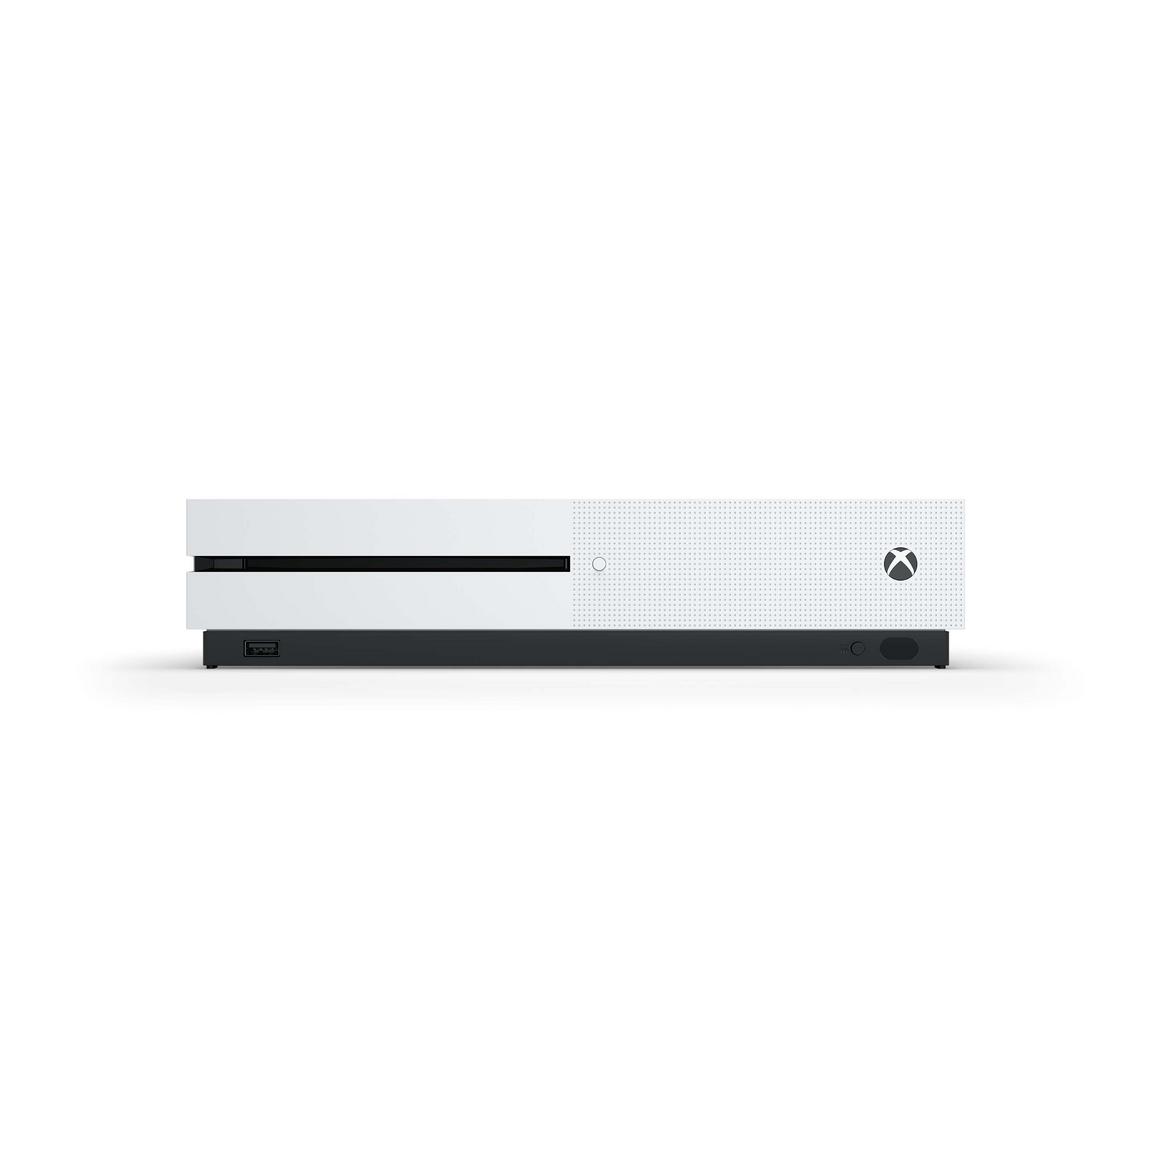 Xbox One S 1 TB Console - (PRE) (Xbox One)